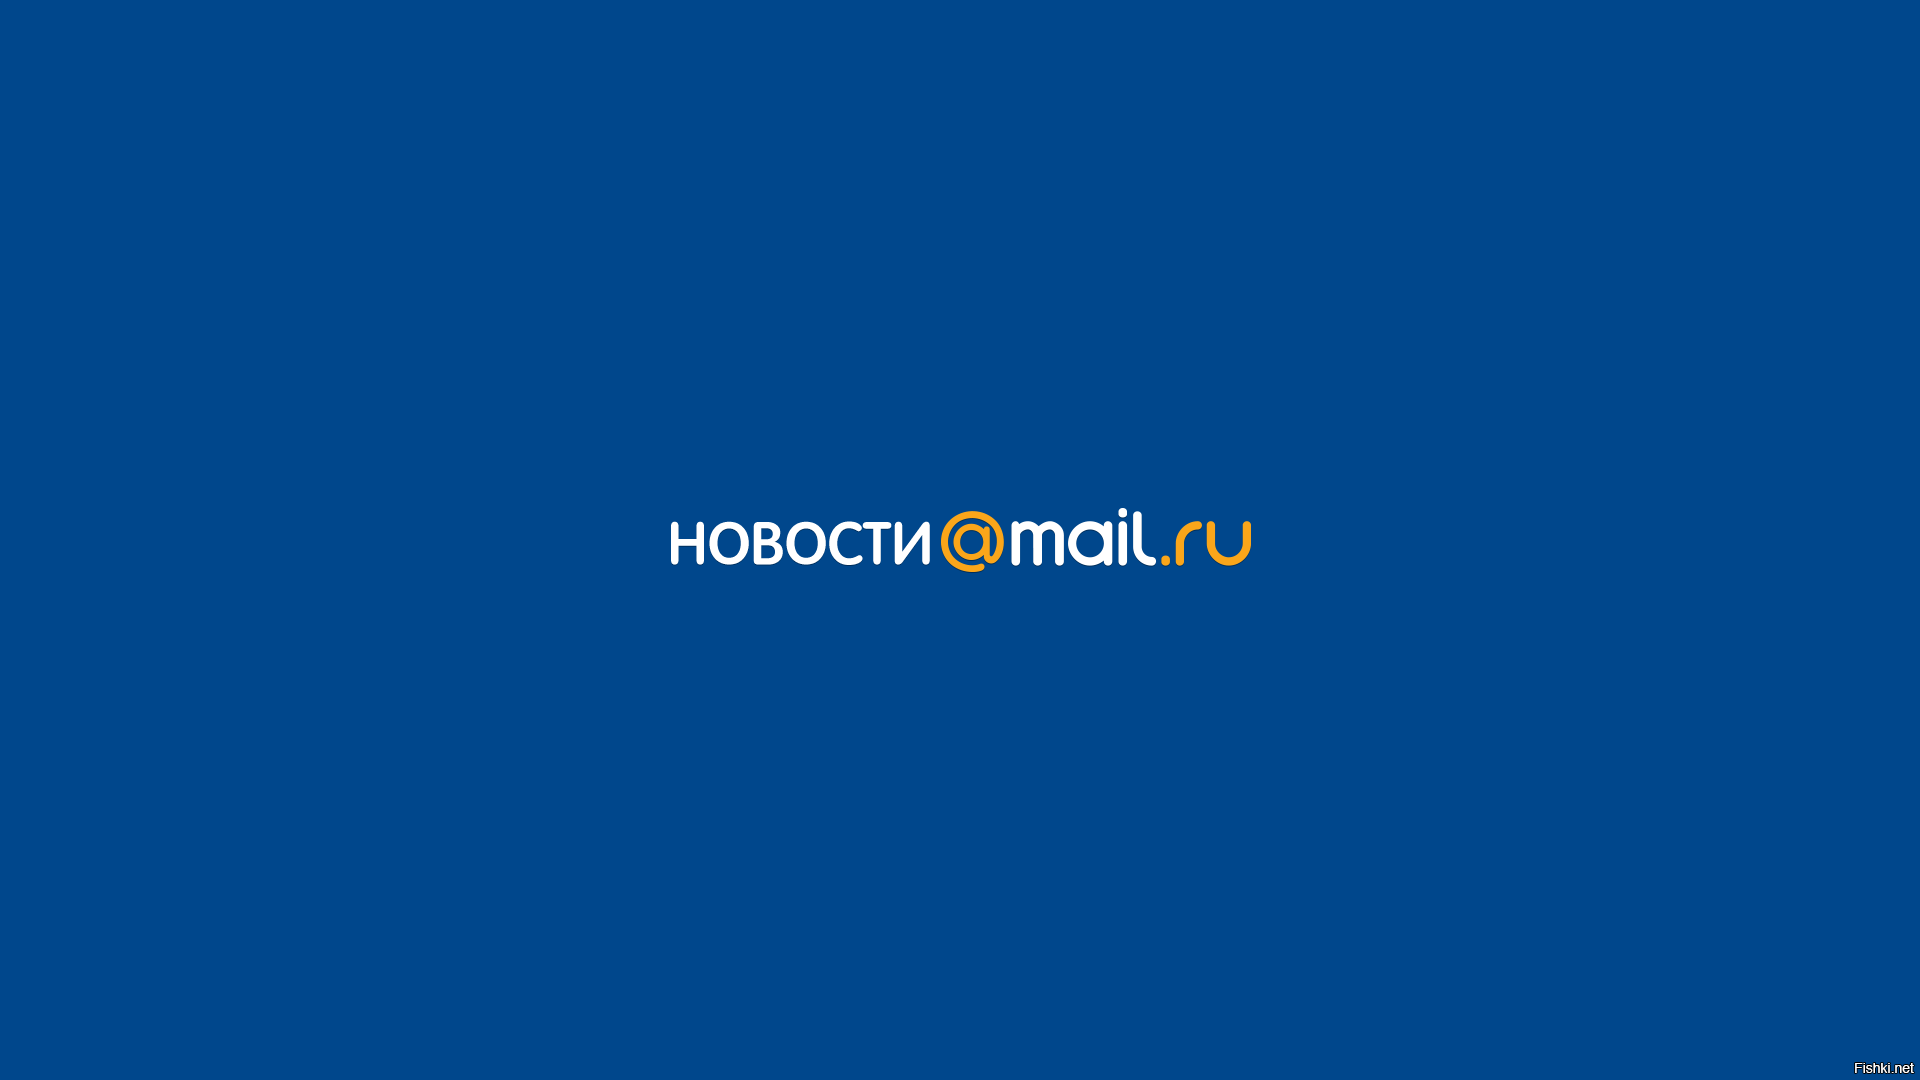 2006 mail ru. Майл новости. Почта mail.ru новости. Лого новости майл ру.